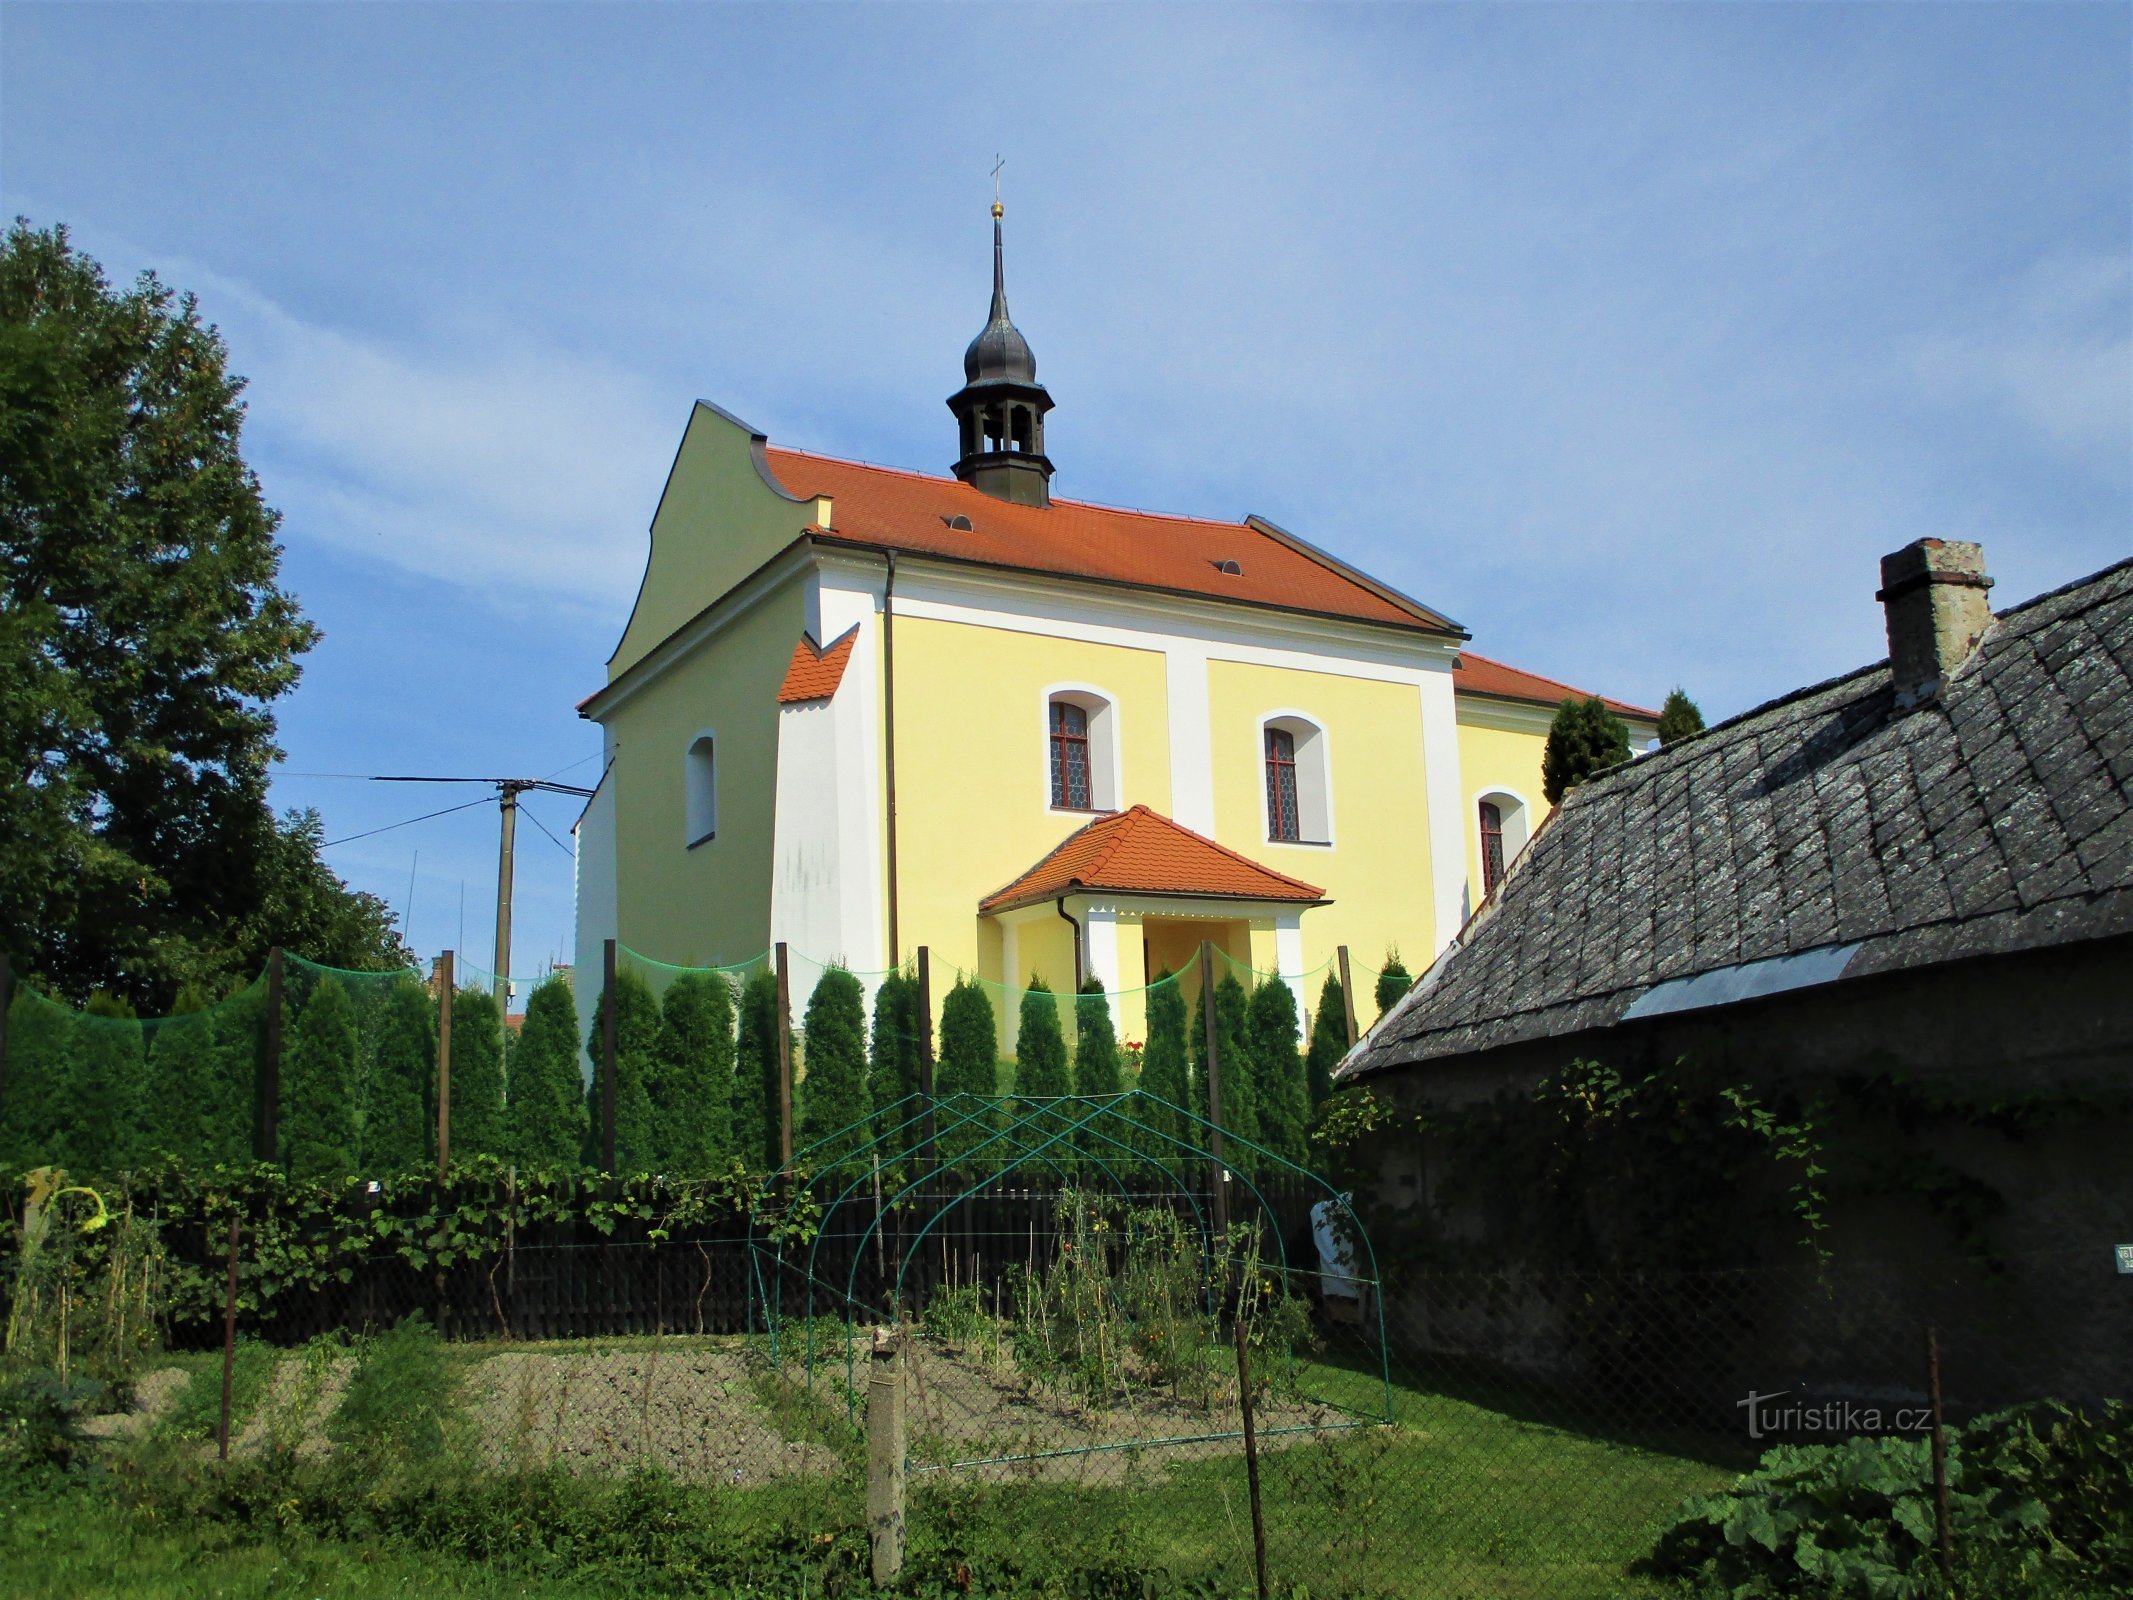 Church of St. Wenceslas (Stará Voda, 13.9.2020/XNUMX/XNUMX)